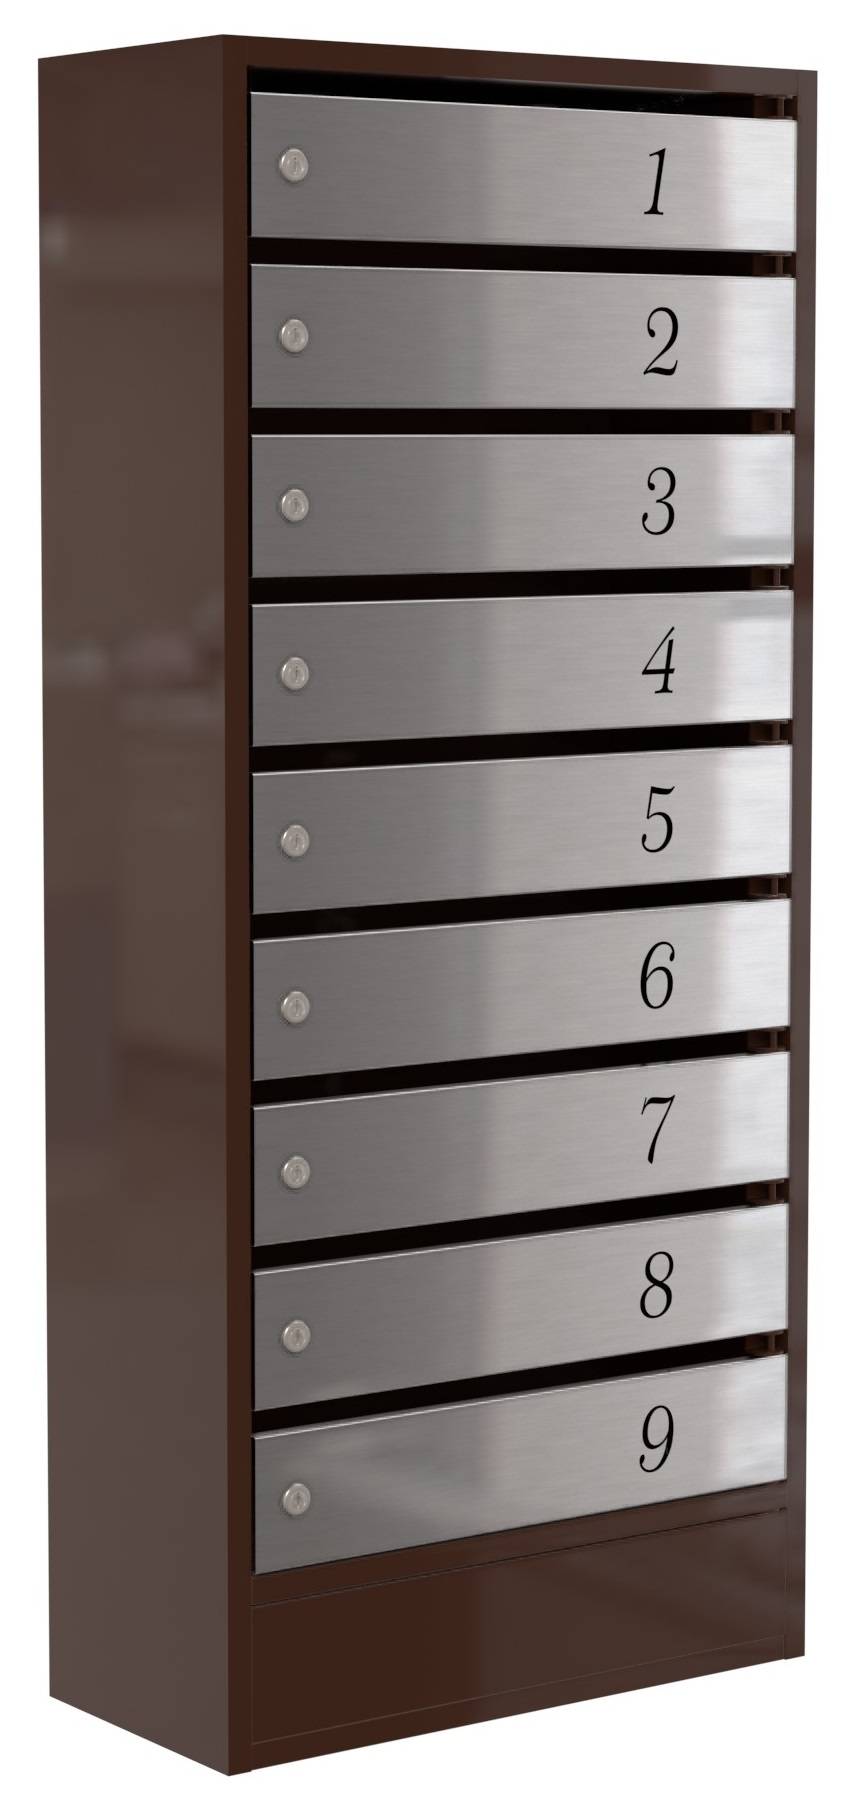 Почтовый ящик Практик-9, 9 индивидуальных секций с дверями из нержавейки